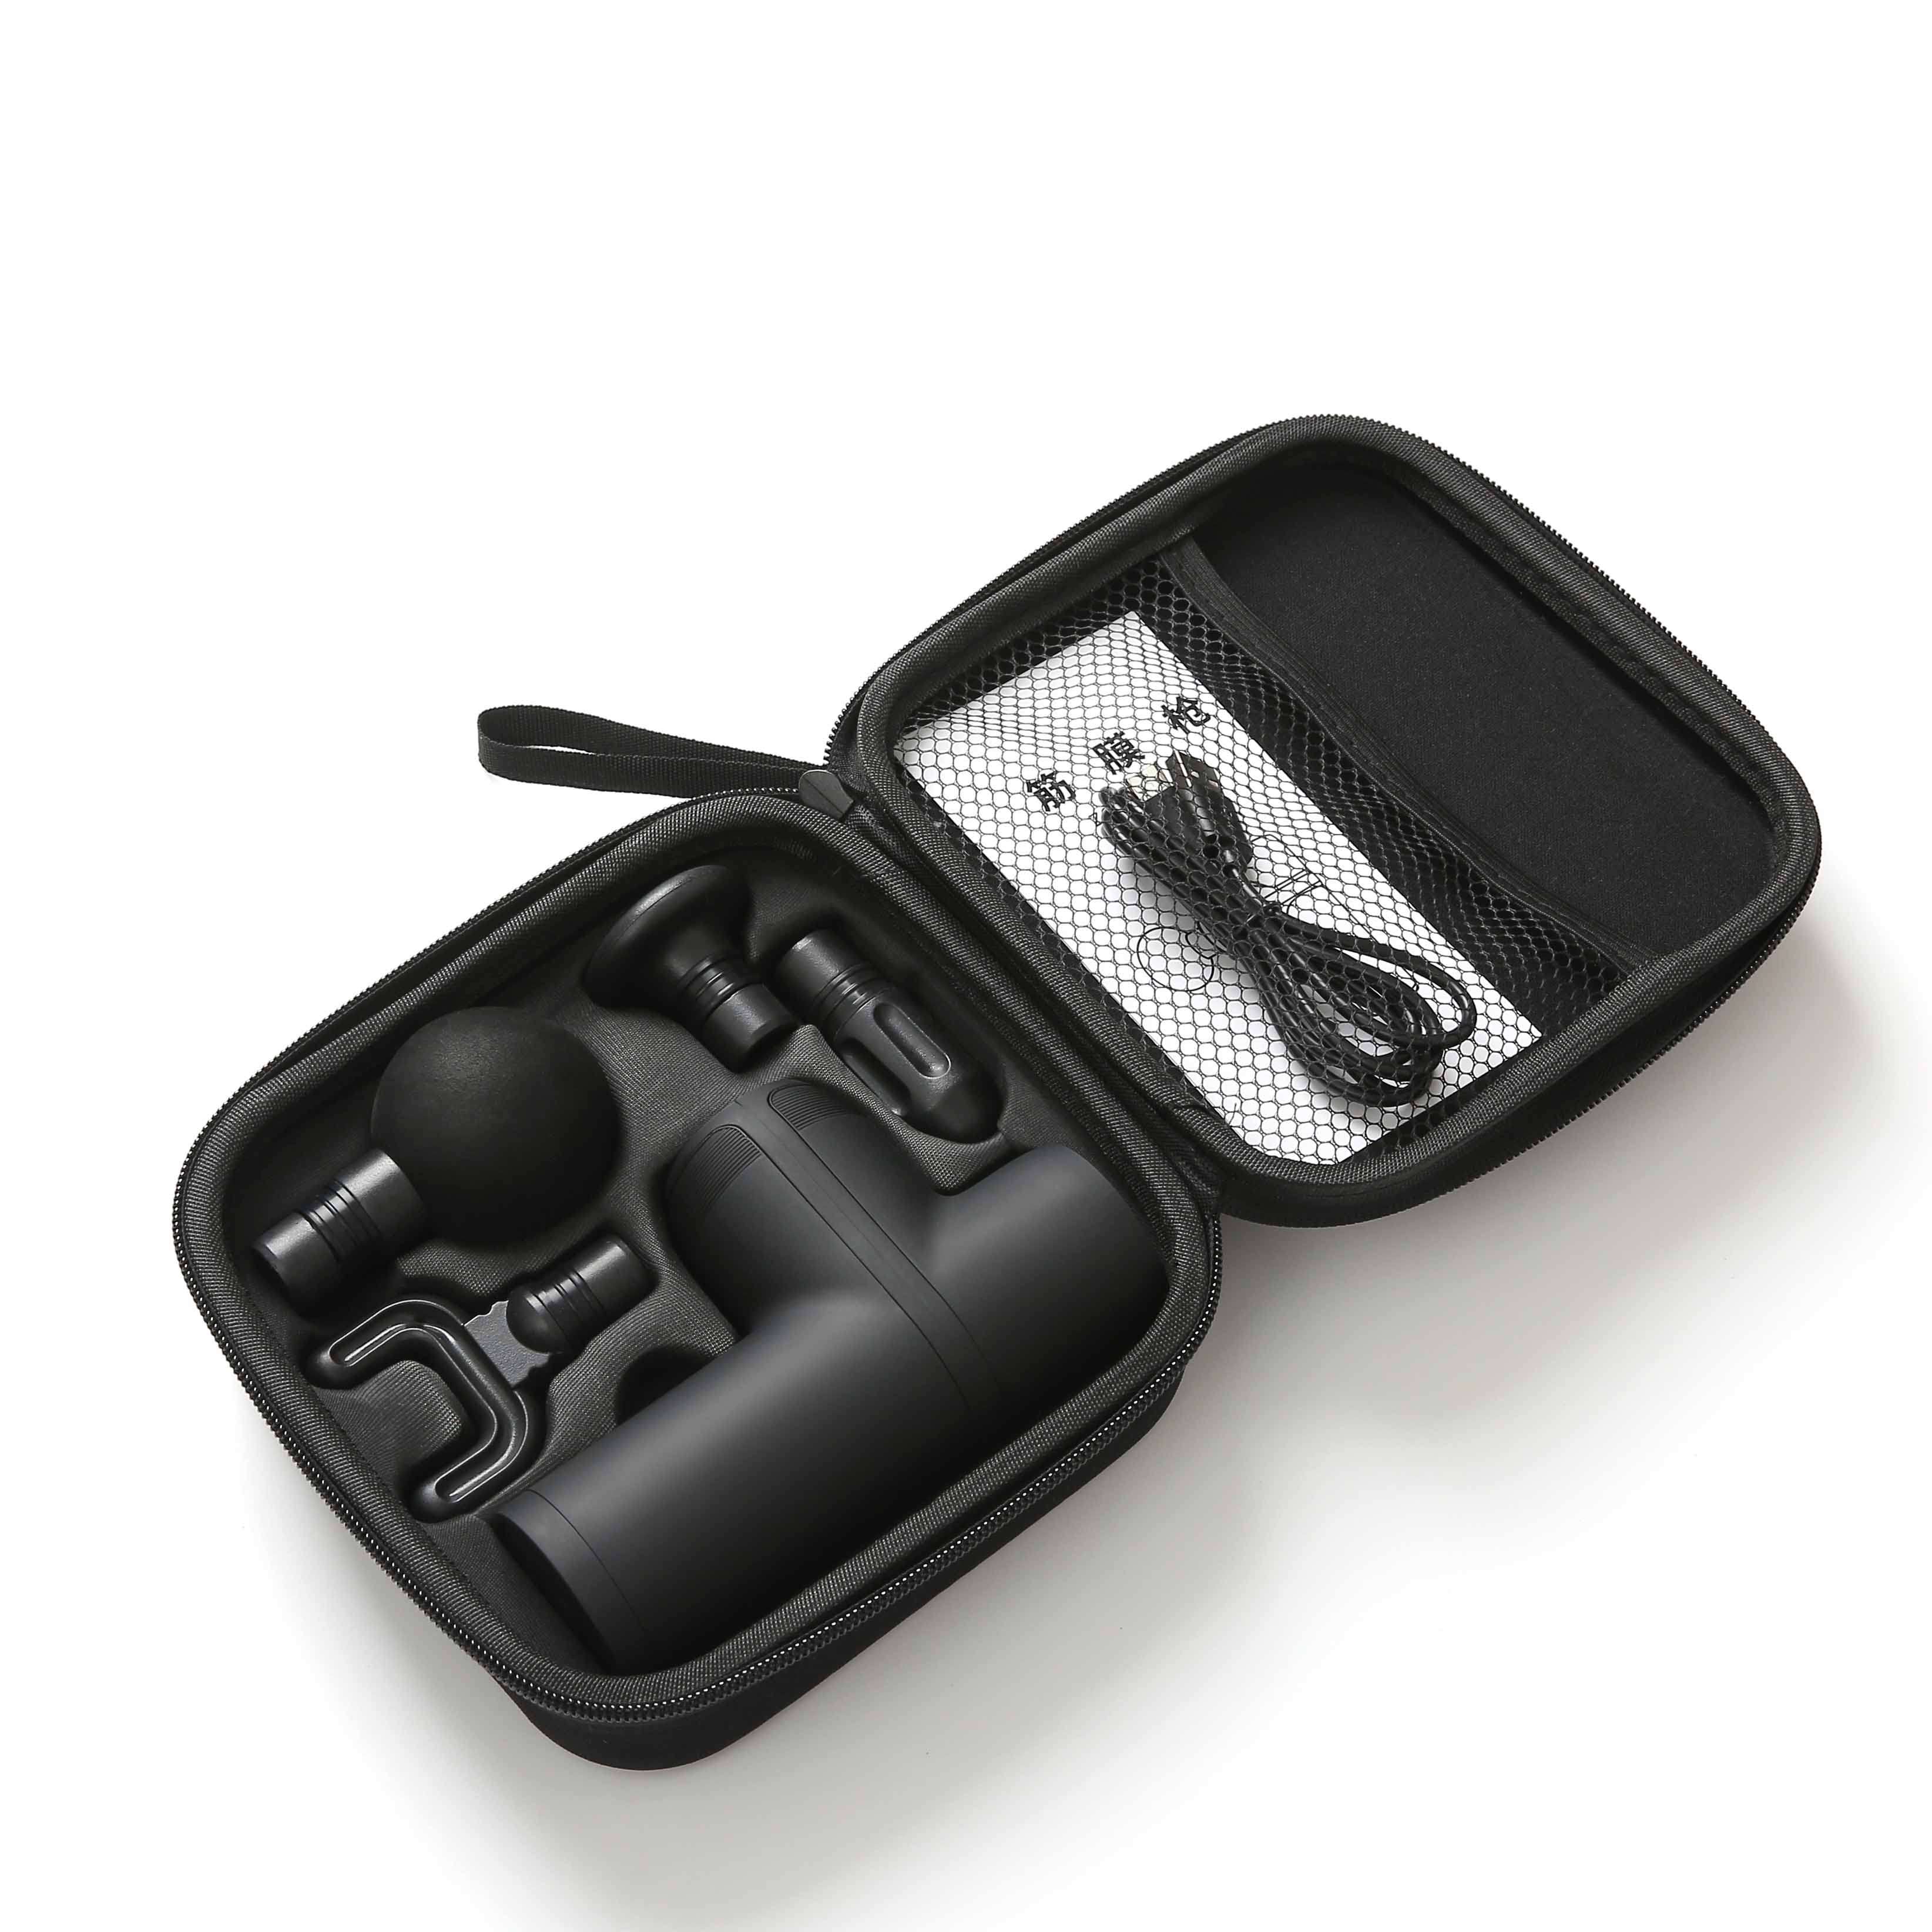 ZMIND H012 portable deep muscle massage gun vibration massage gun cordless mini intelligent massage gun high quality